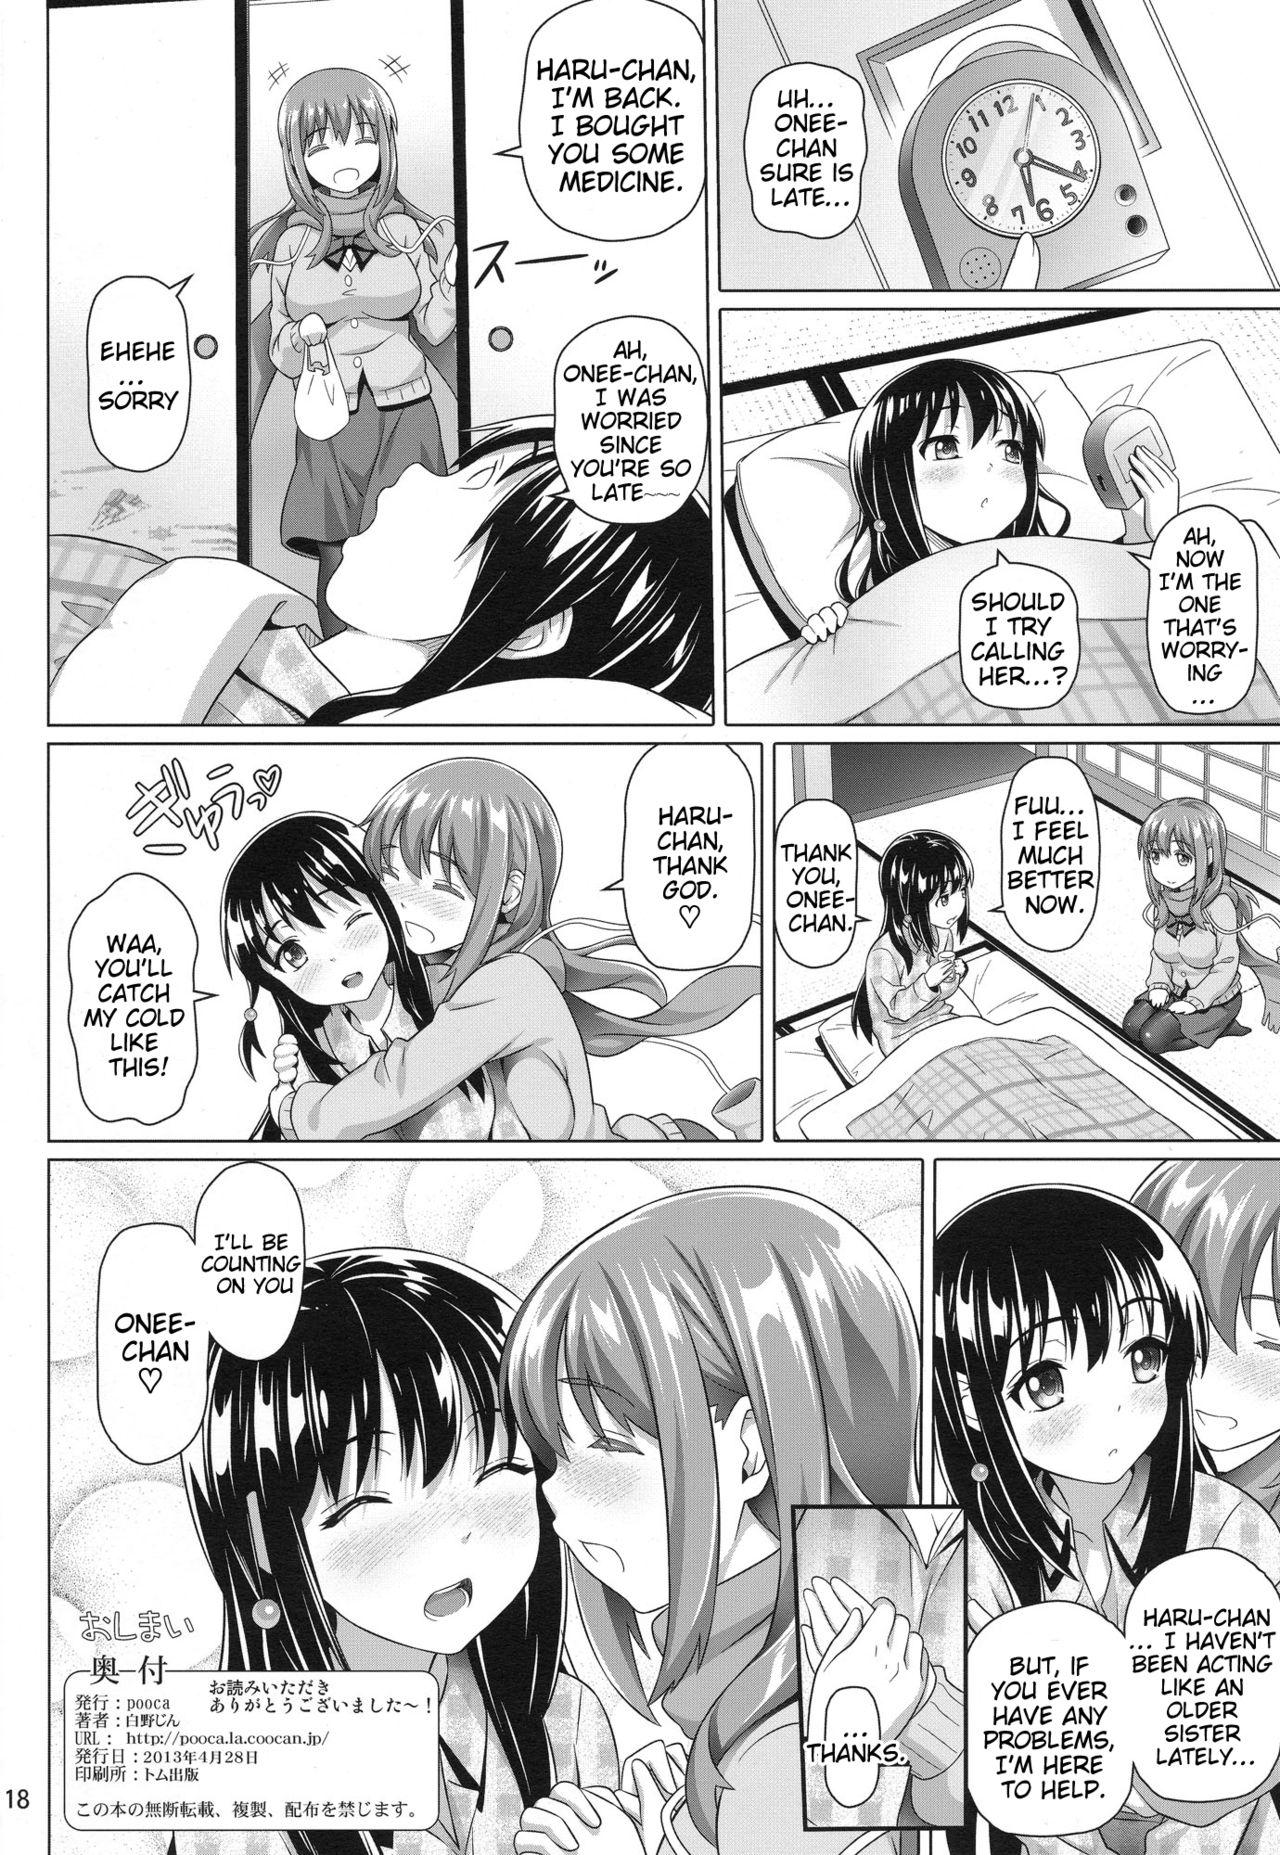 Women Sucking Dicks Yuu Nee no Otsukai | Big-Sis Yuu's Errand - Saki Hardcore Porno - Page 17